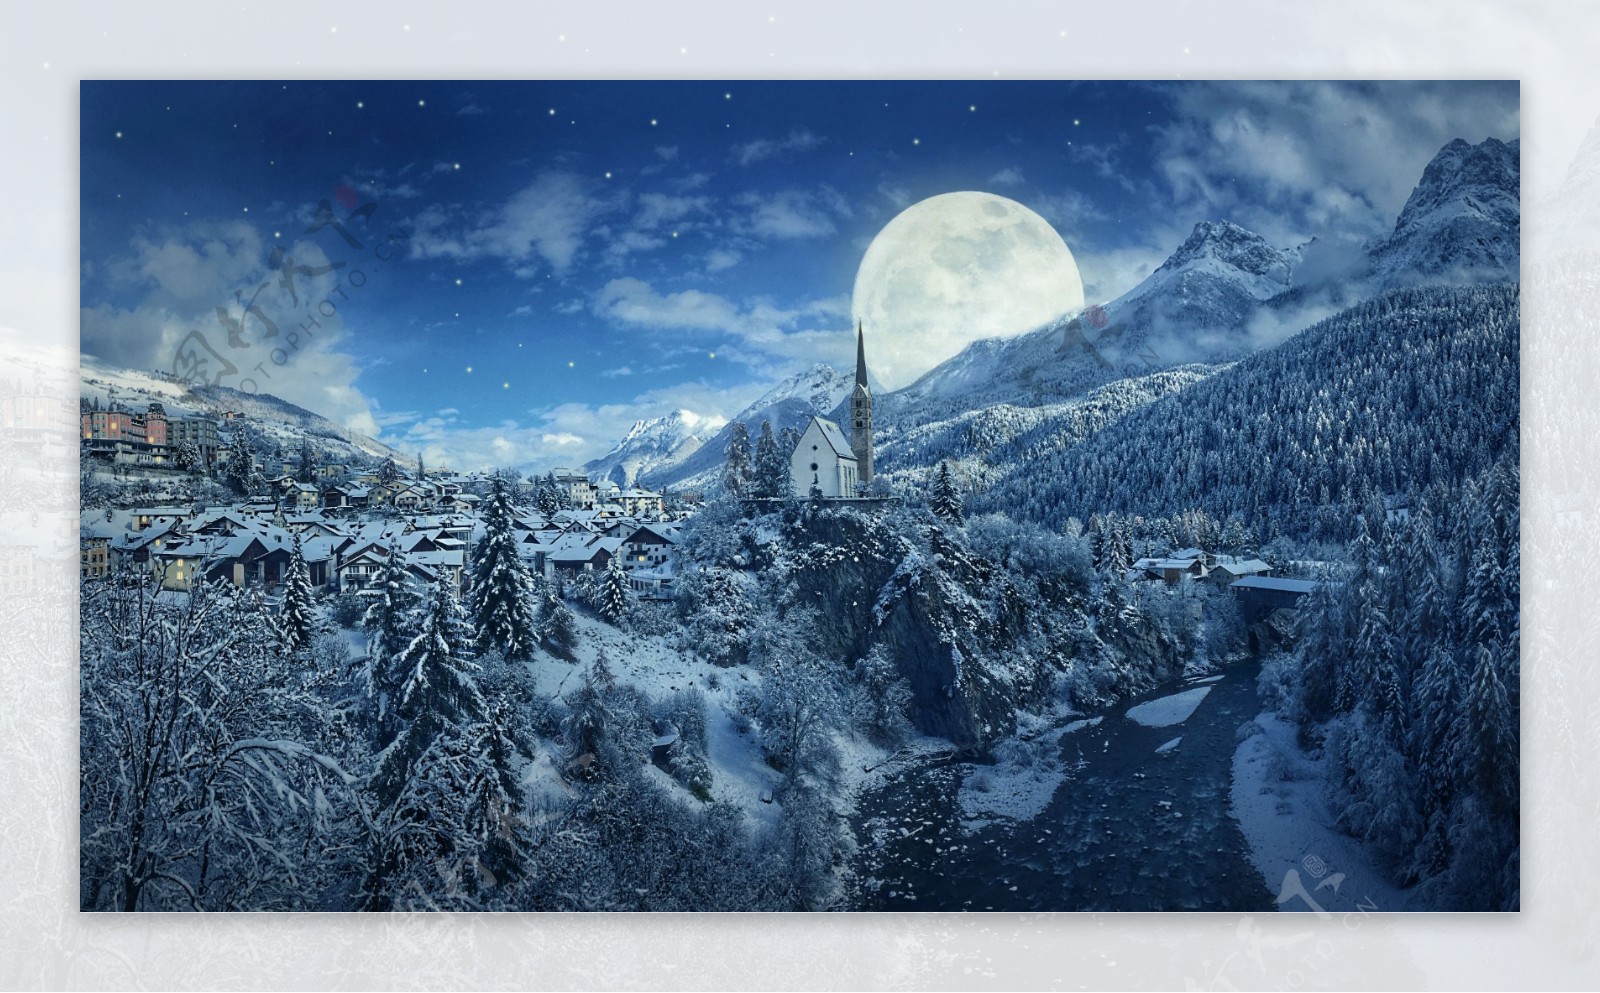 冬天夜景背景图片素材